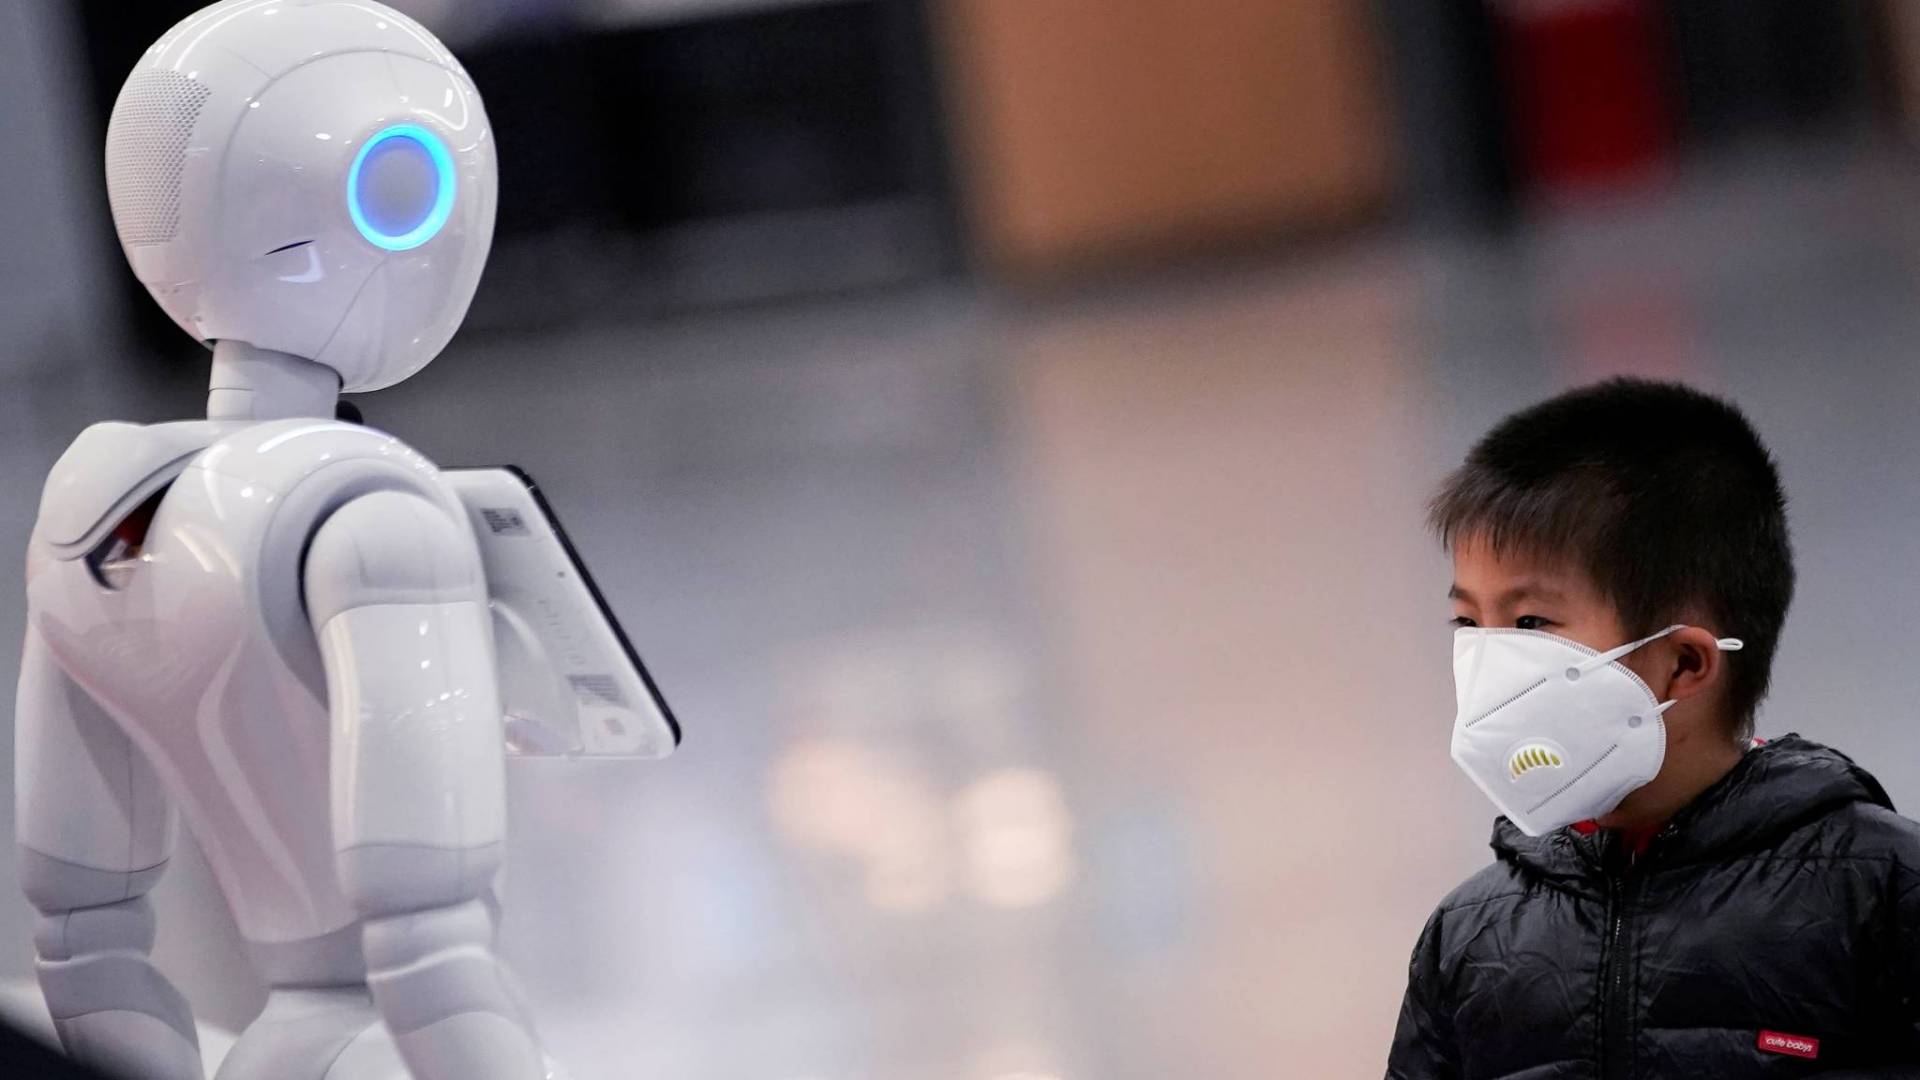 بالصور.. اليابان تسخر الروبوتات للعمل في المتاجر بسبب كورونا